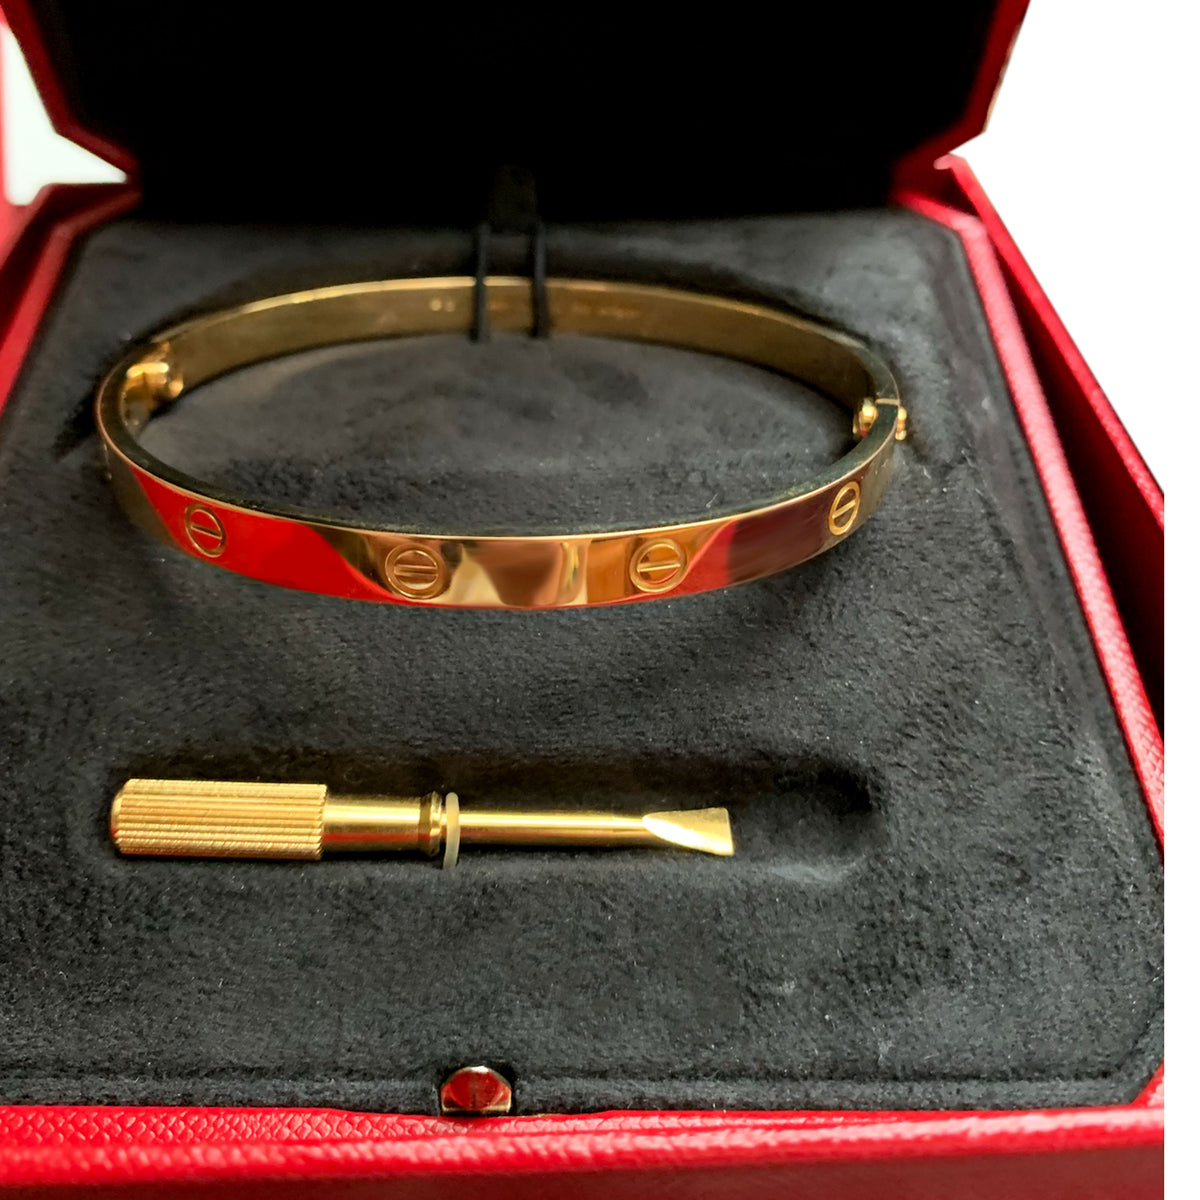 Cartier Love Bracelet in 18K Yellow Gold Size 18